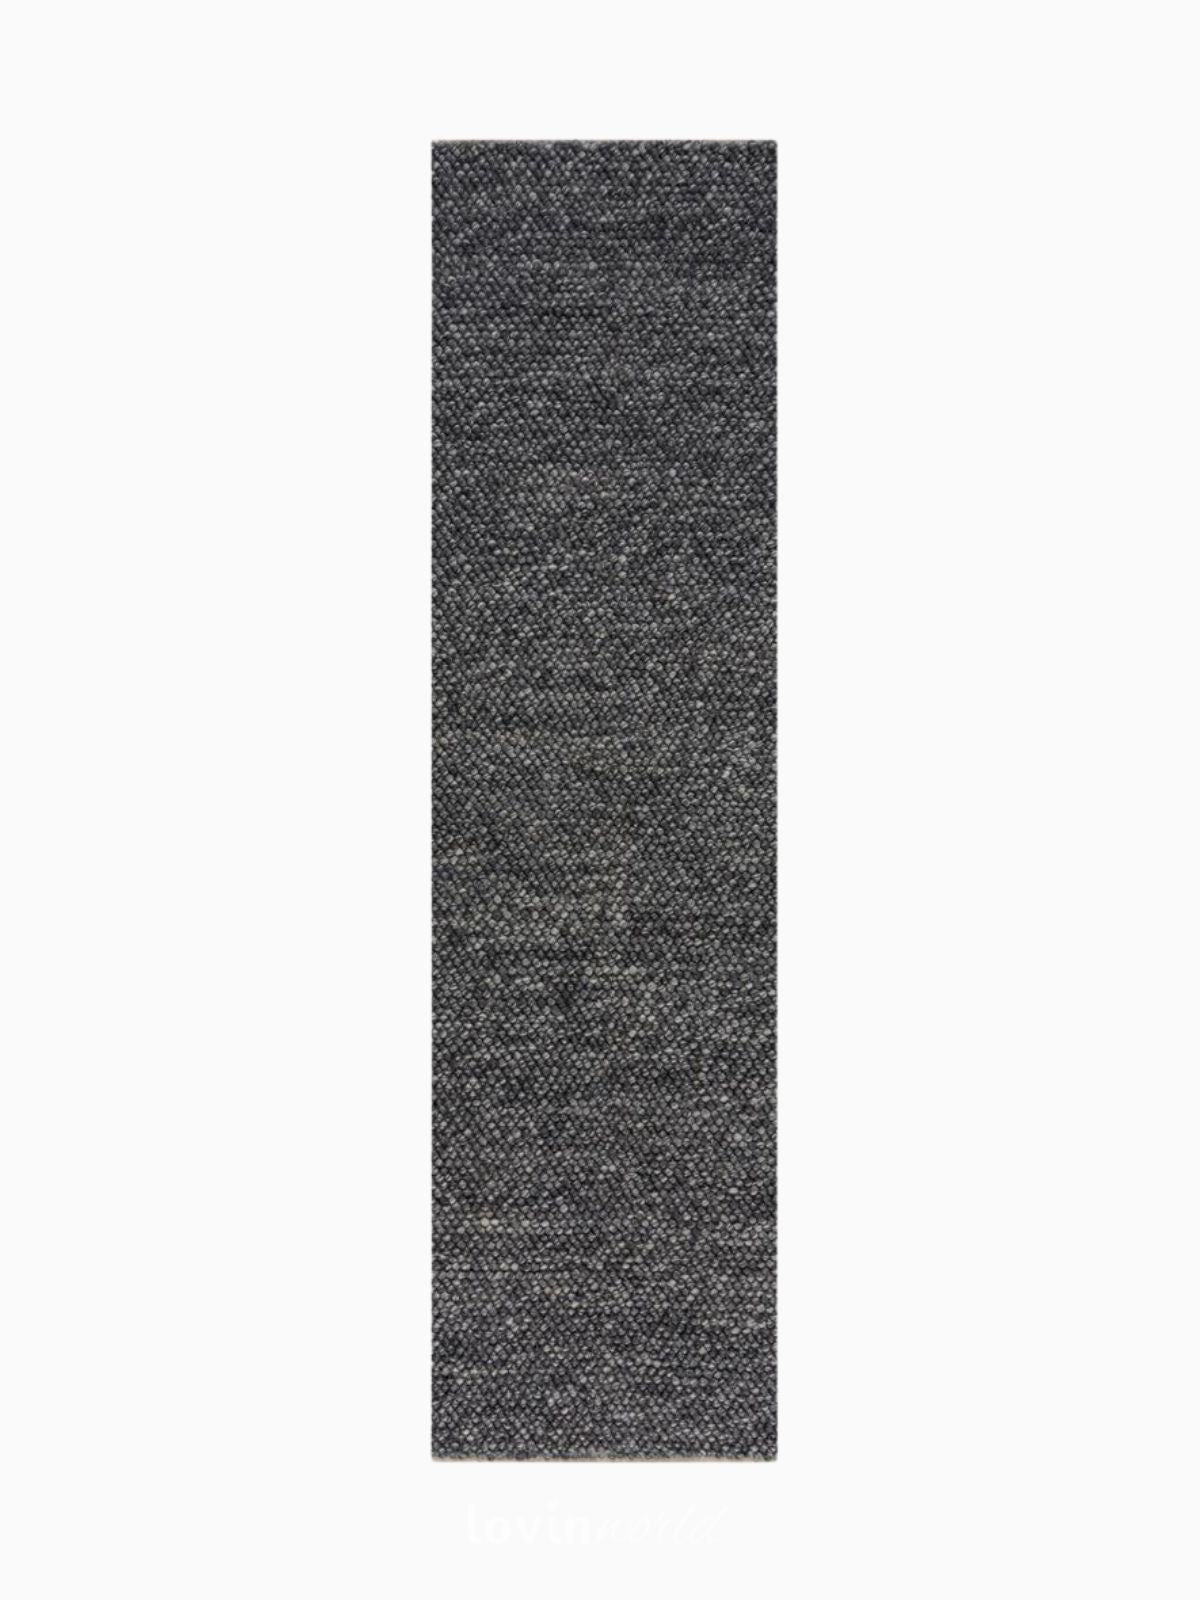 Runner di design MInerals in lana, colore grigio scuro 60x230 cm.-1